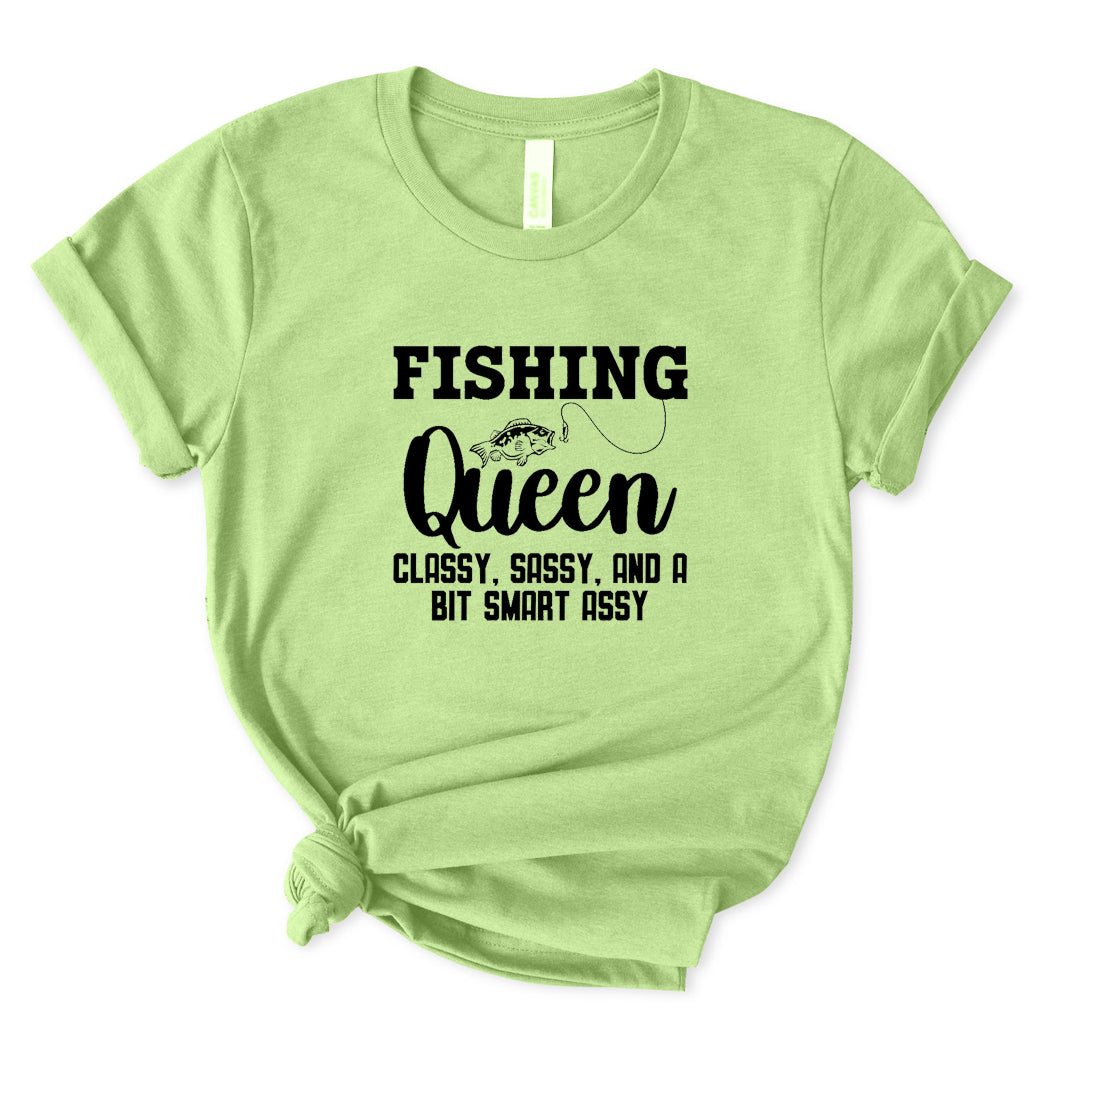 Fishing Queen T-Shirt for Women